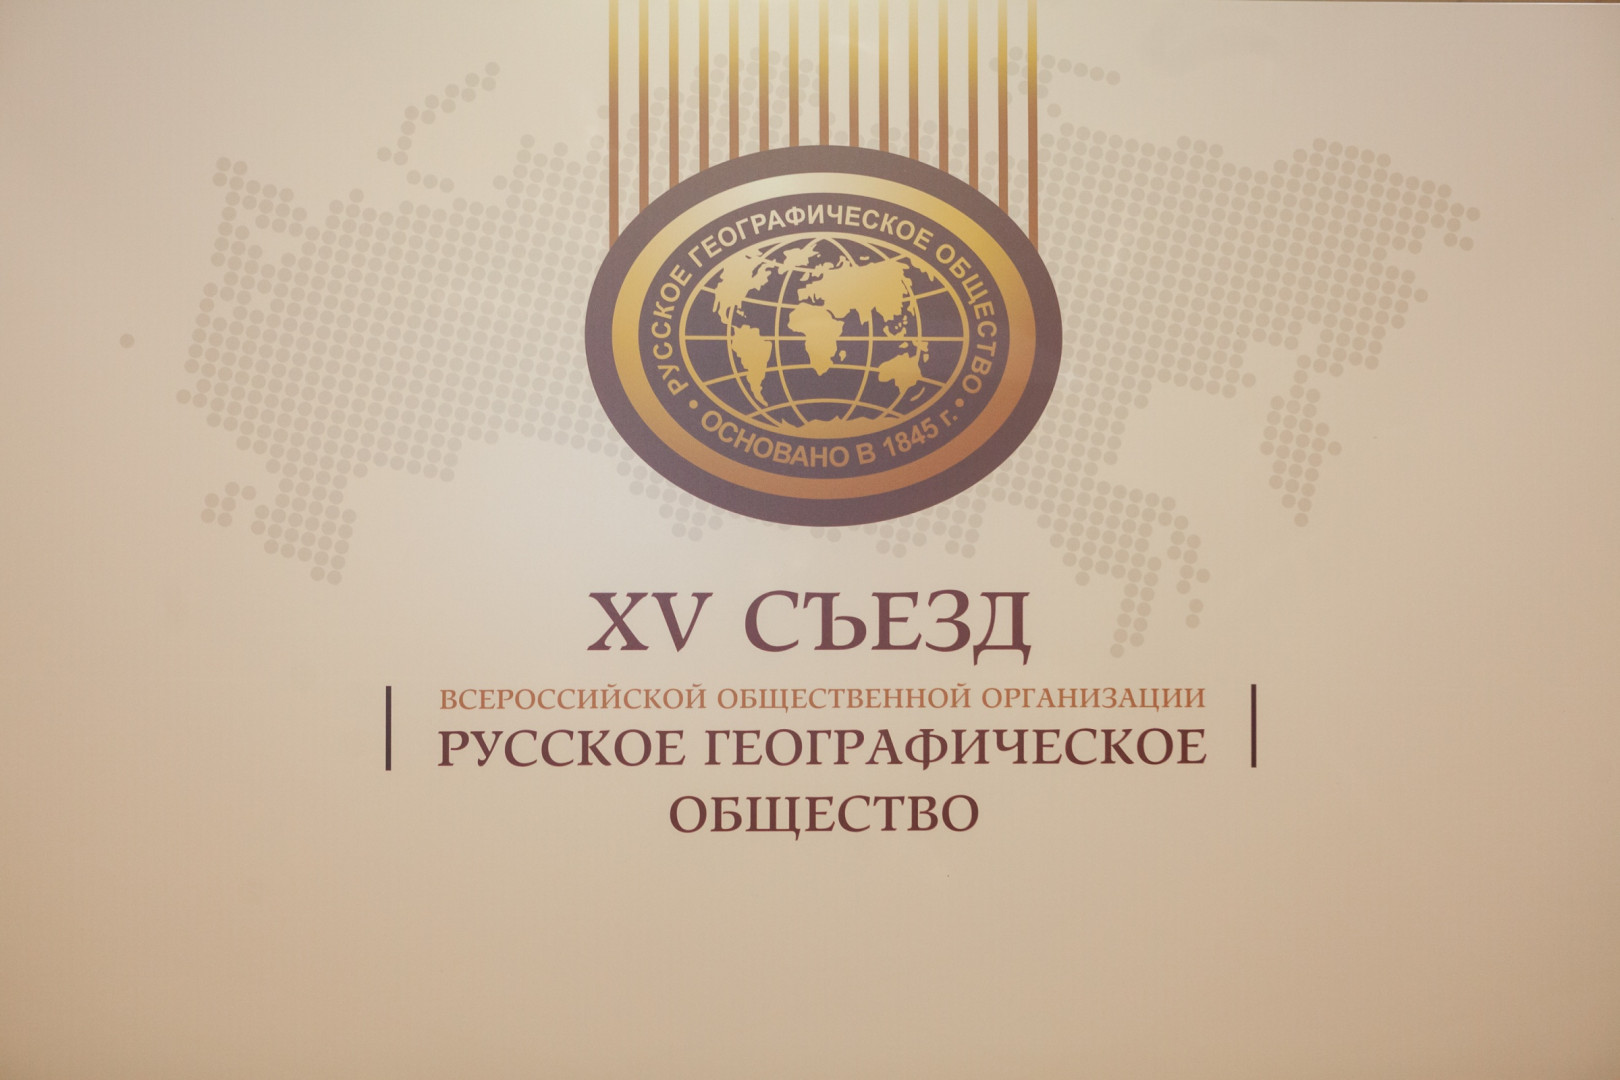 XV Съезд Русского географического общества